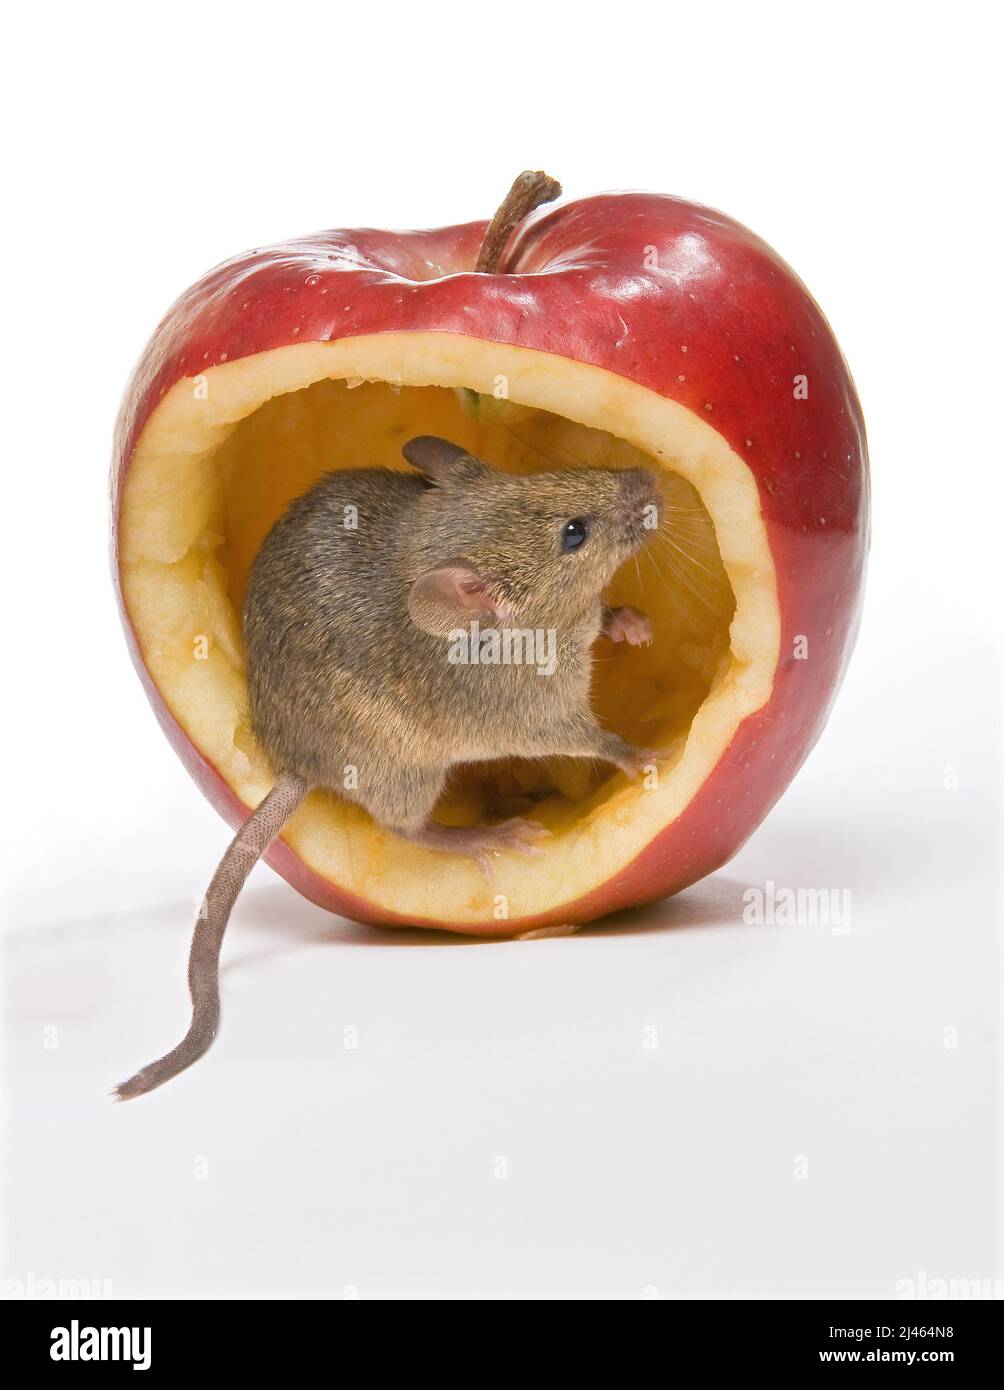 Kleine braune Maus, die in einem großen roten Apfel sitzt Stockfoto